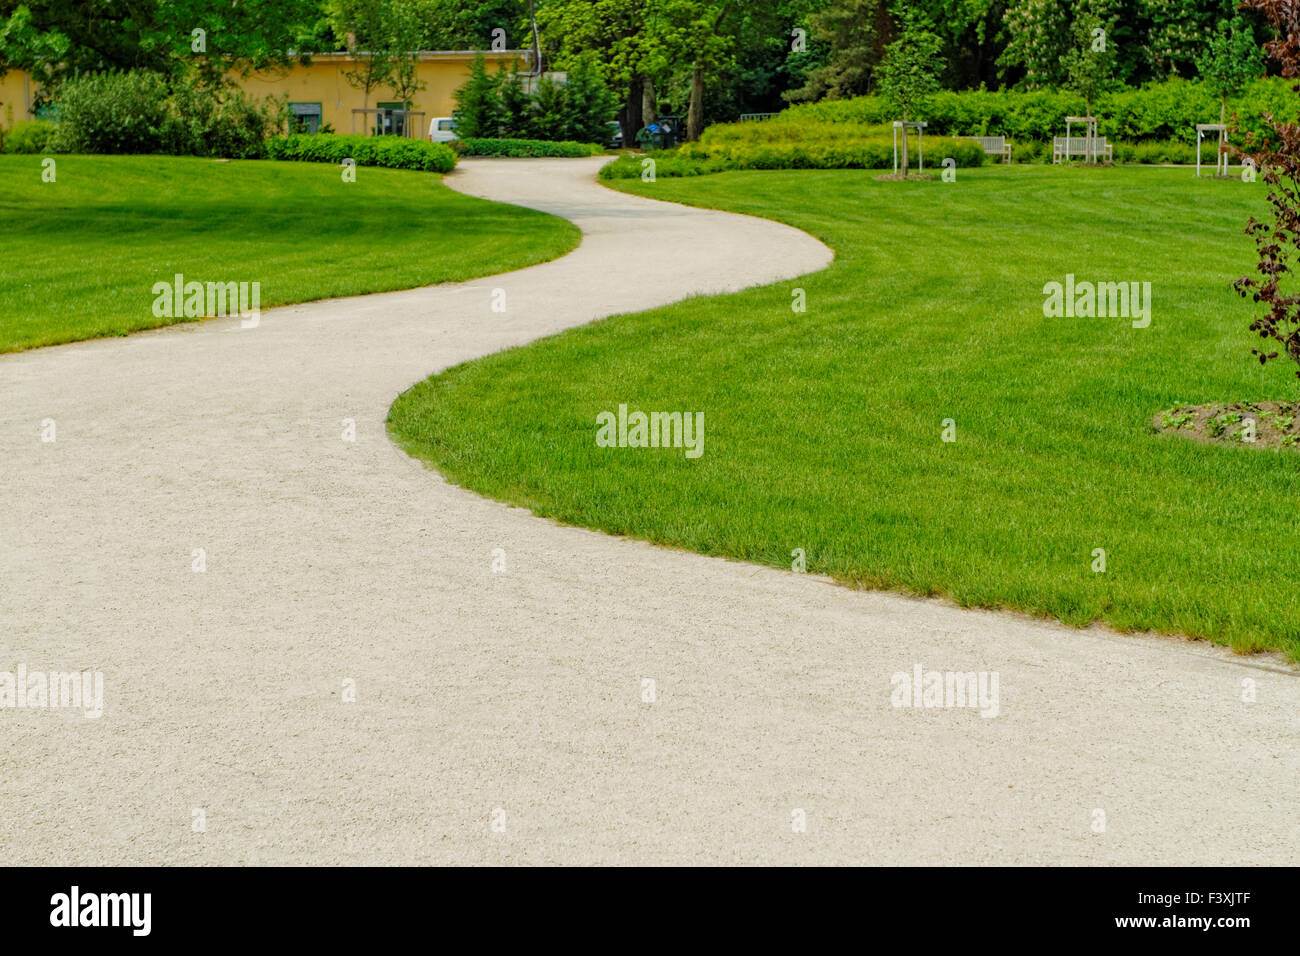 Winding path through a peaceful green garden Stock Photo